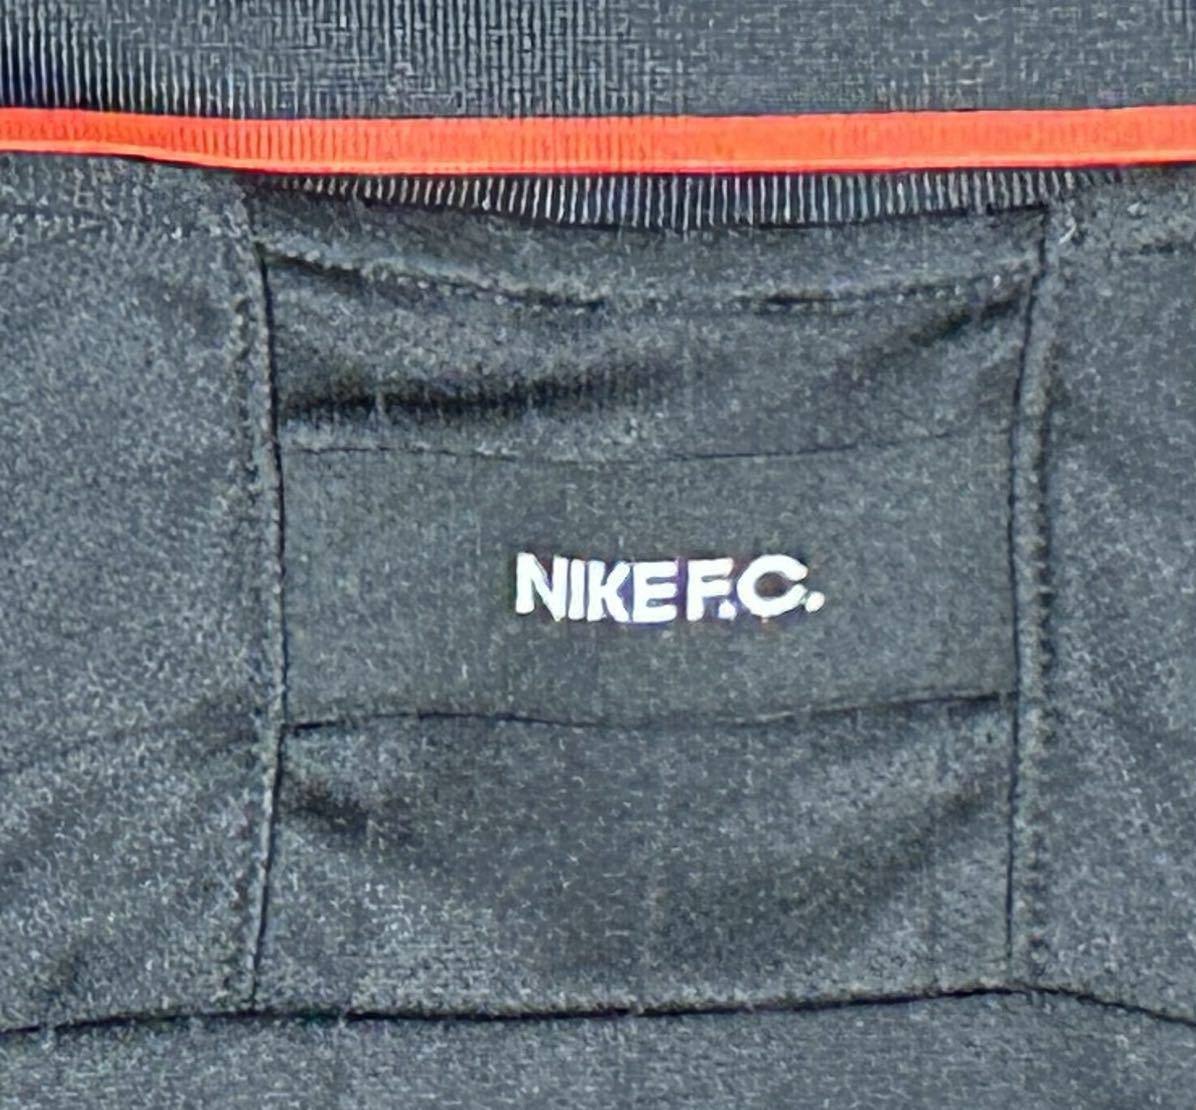 NIKE F.C.・Dri-Fit TRIBUNA ナイキ トリビューナ ジャージ ブラック 半袖ポロシャツ・XL サイズ・新品_画像6